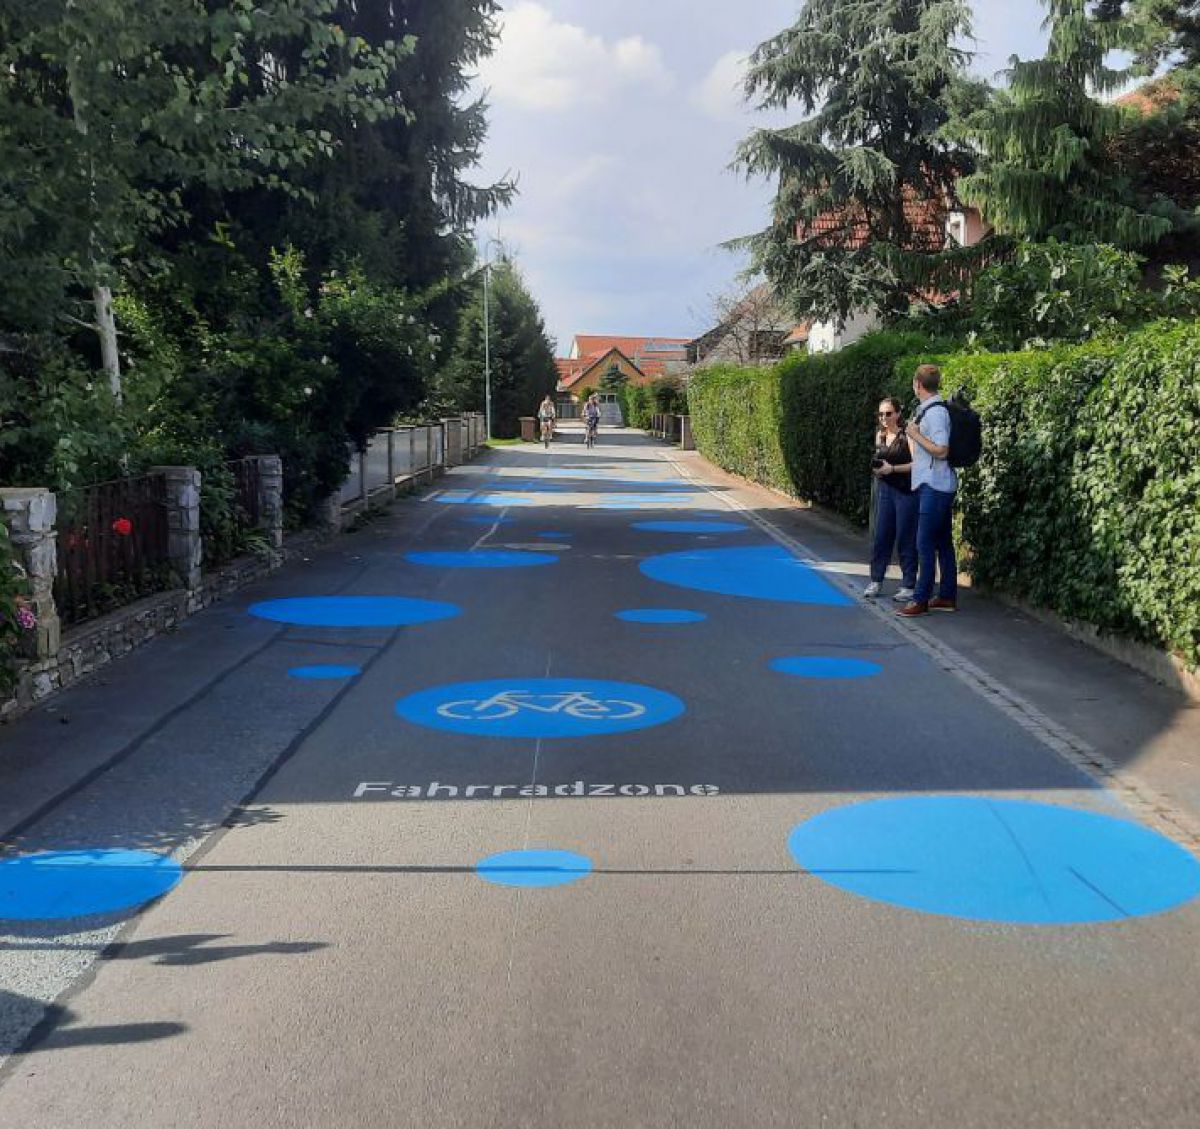 Der Asphaltboden in einer Siedlungsstraße ist mit großen blauen Kreisen als Fahrradzone gekennzeichnet. Am Gehsteig sieht man Fußgänger.